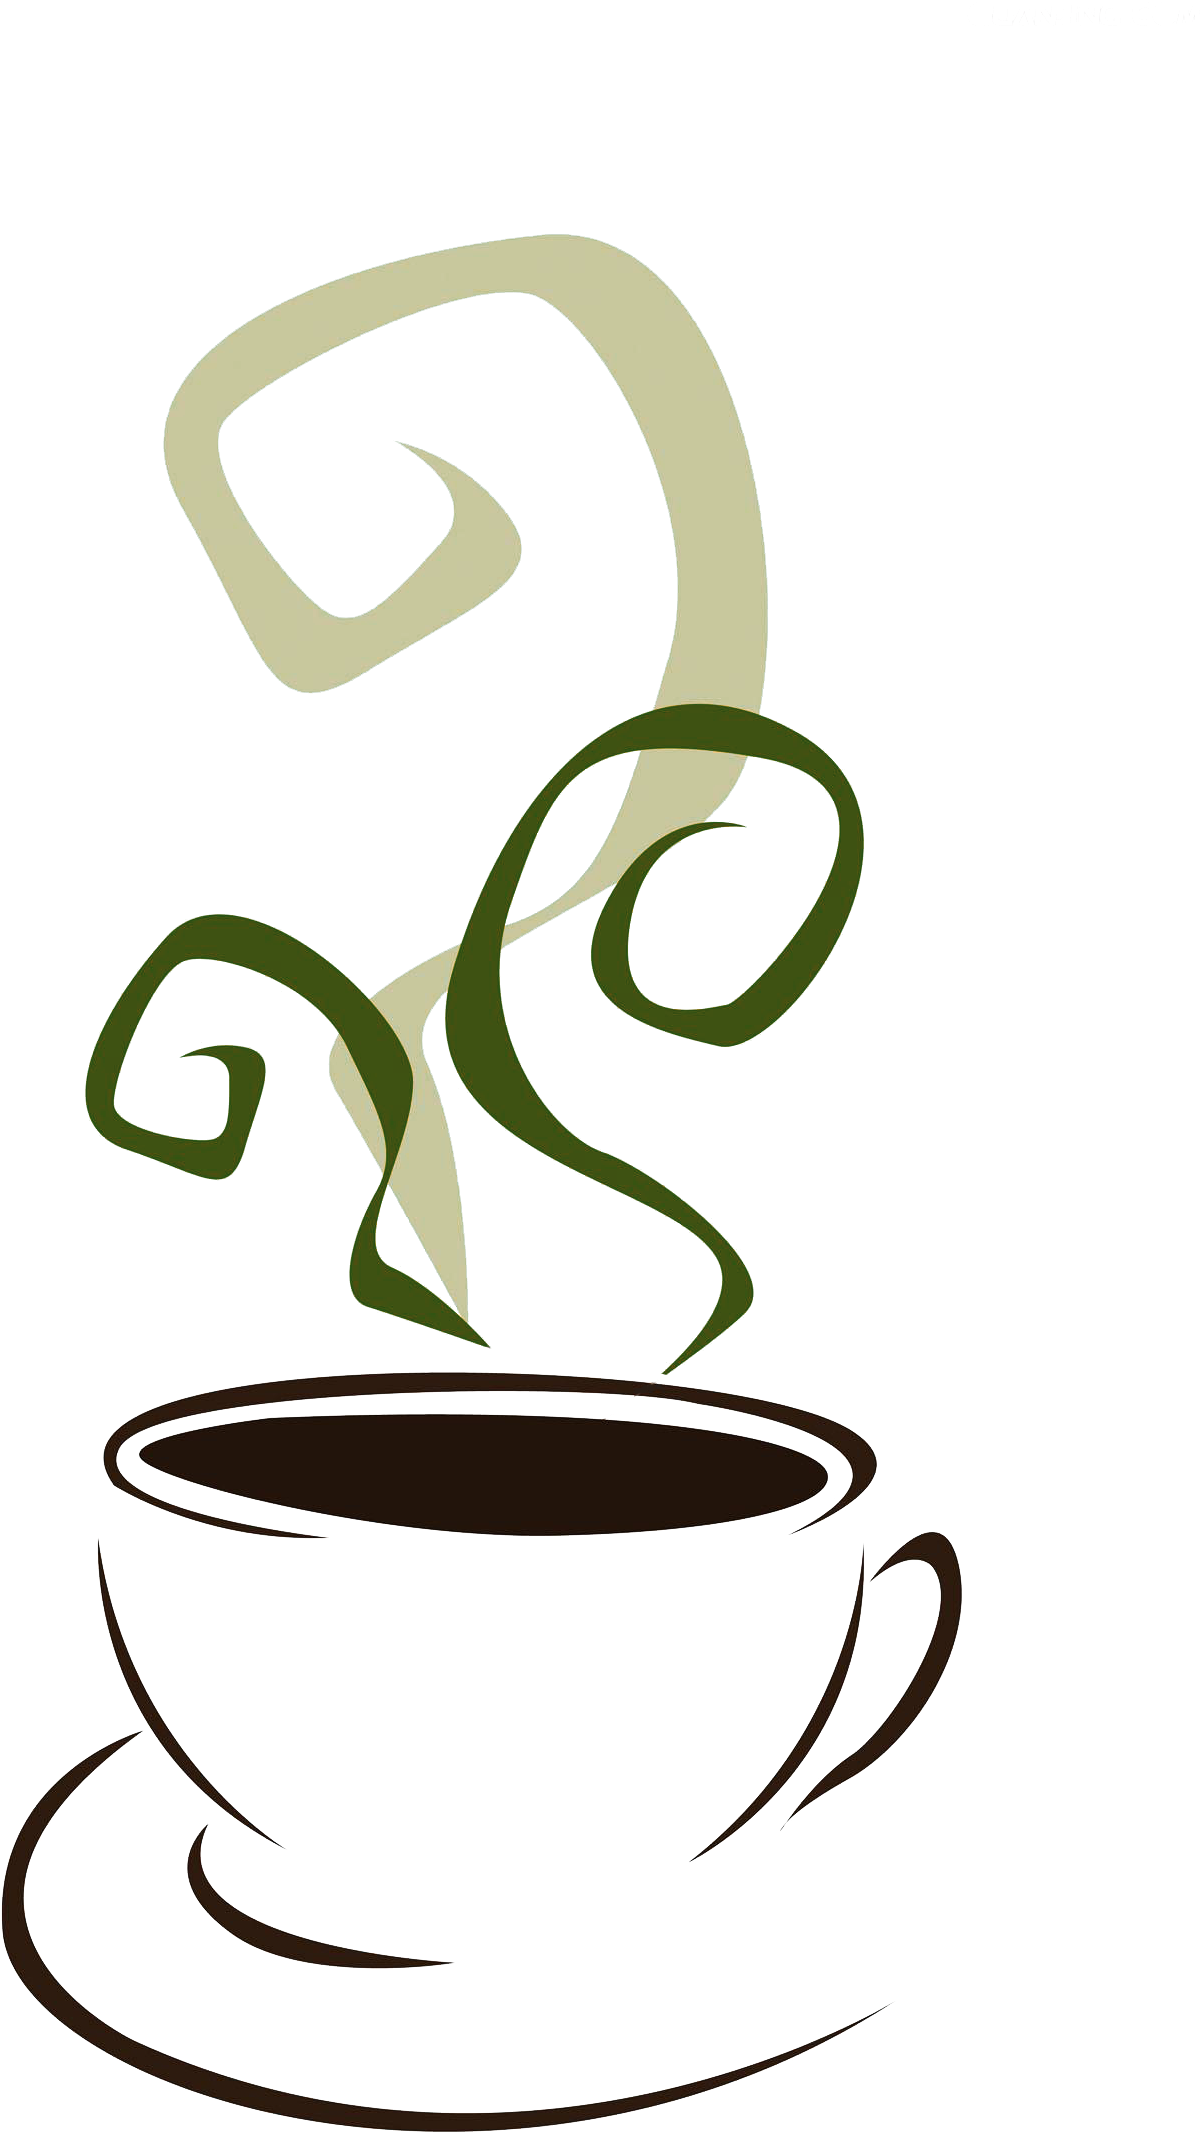 Coffee Tea Stock Illustration Non-dairy Creamer Clip - Coffee Tea Stock Illustration Non-dairy Creamer Clip (1458x2396)